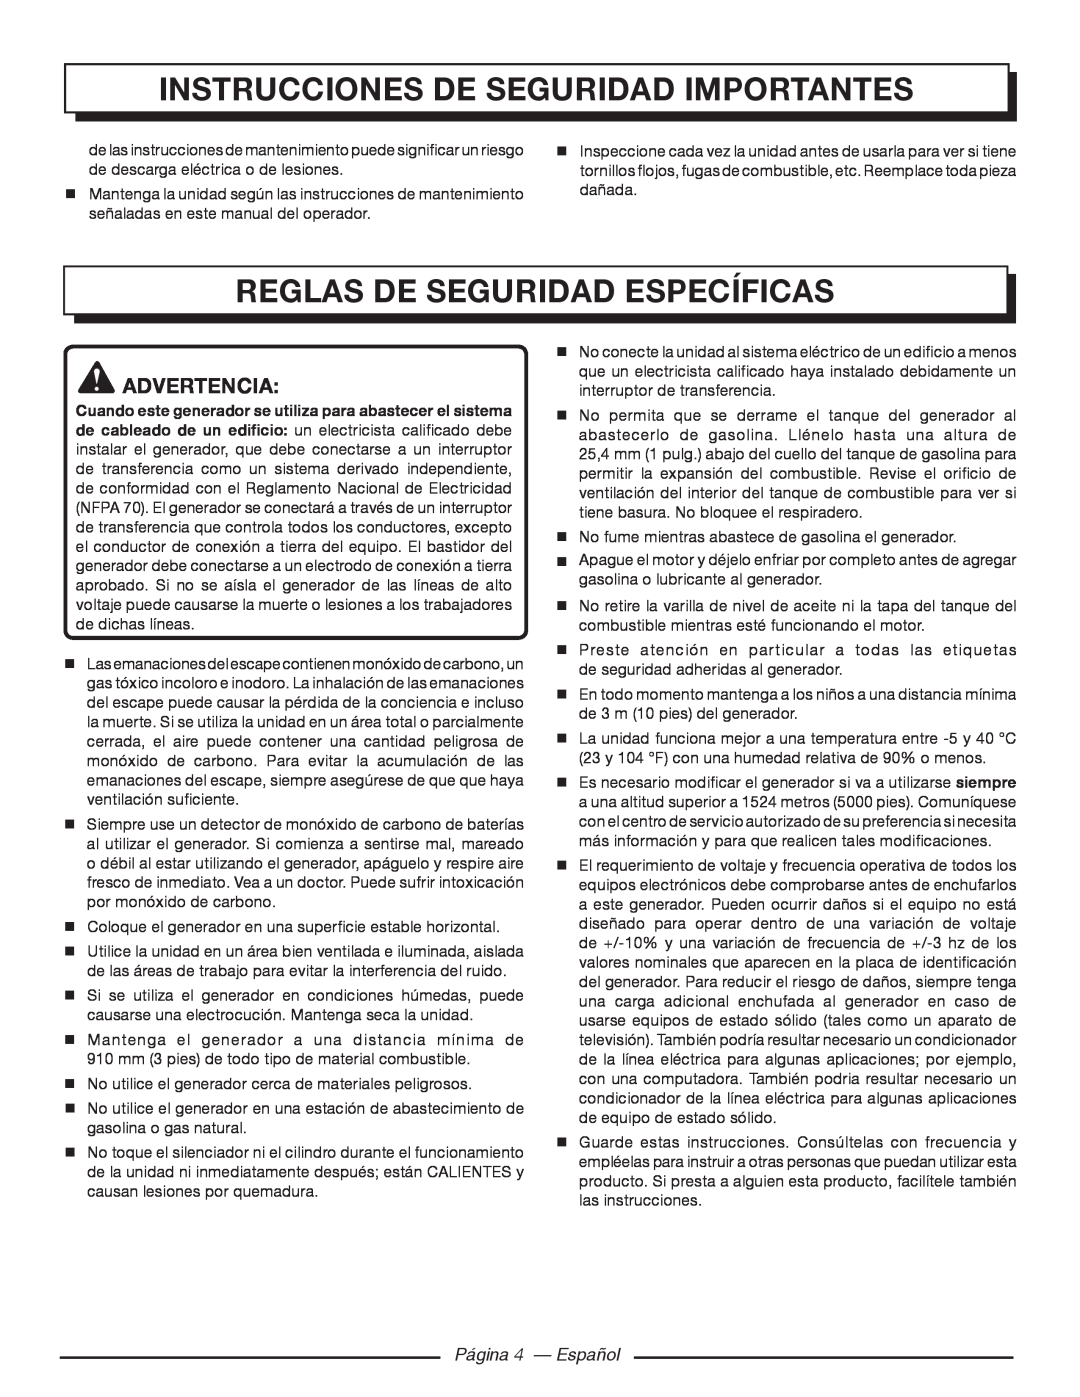 Homelite HGCA3000 Instrucciones de seguridad importantes, Reglas De Seguridad Específicas, Advertencia, Página 4 - Español 